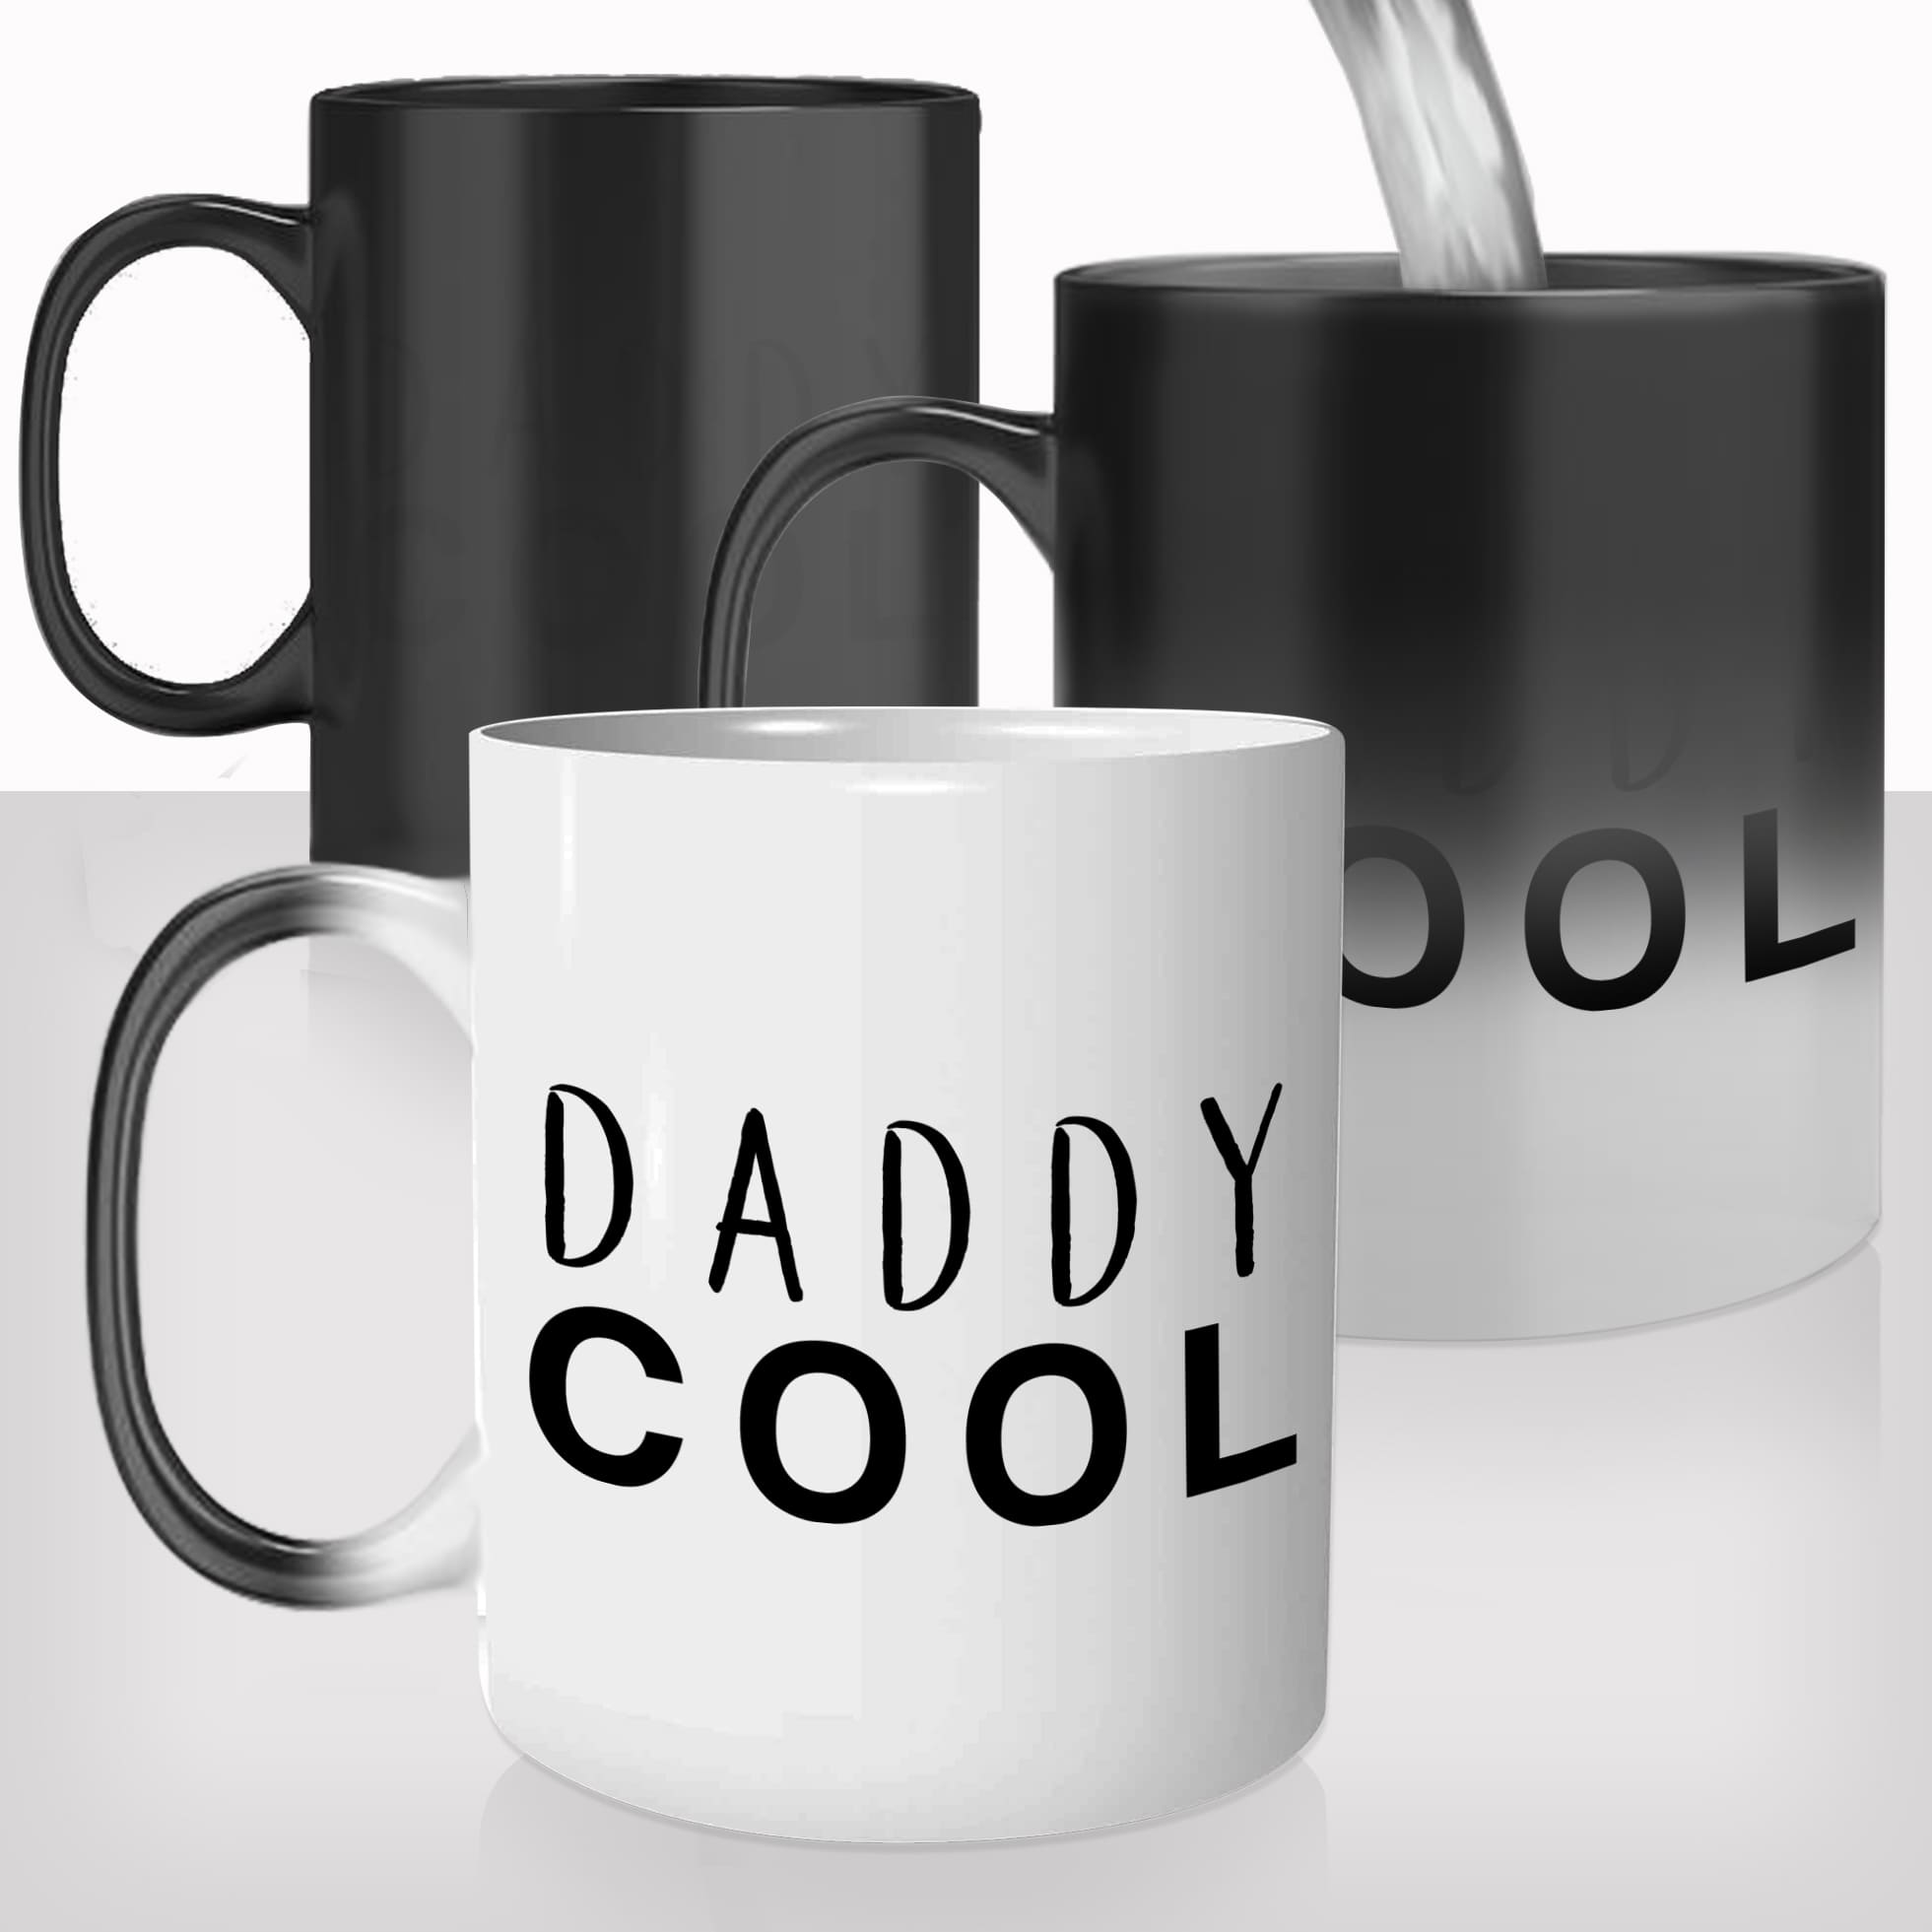 mug-magique-tasse-magic-thermoréactif-chauffant-personnalisé-daddy-cool-papa-fete-des-pères-photo-personnalisable-idée-cadeau-original